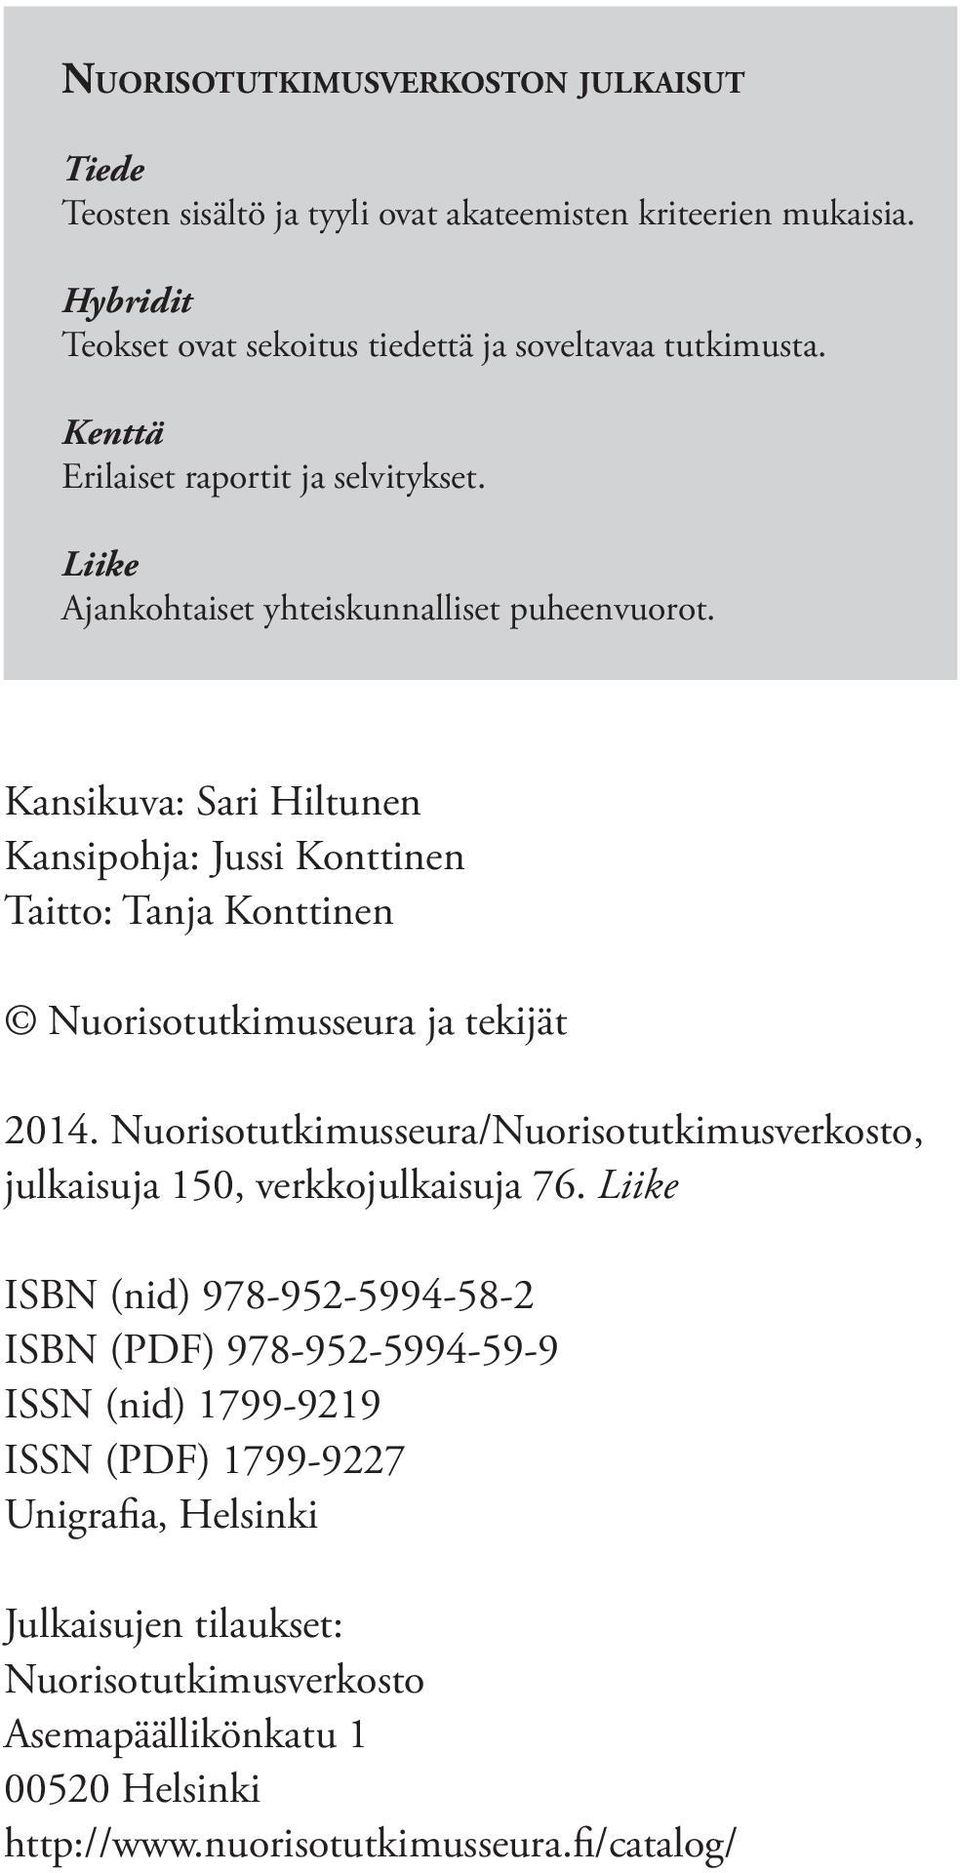 Kansikuva: Sari Hiltunen Kansipohja: Jussi Konttinen Taitto: Tanja Konttinen Nuorisotutkimusseura ja tekijät 2014.